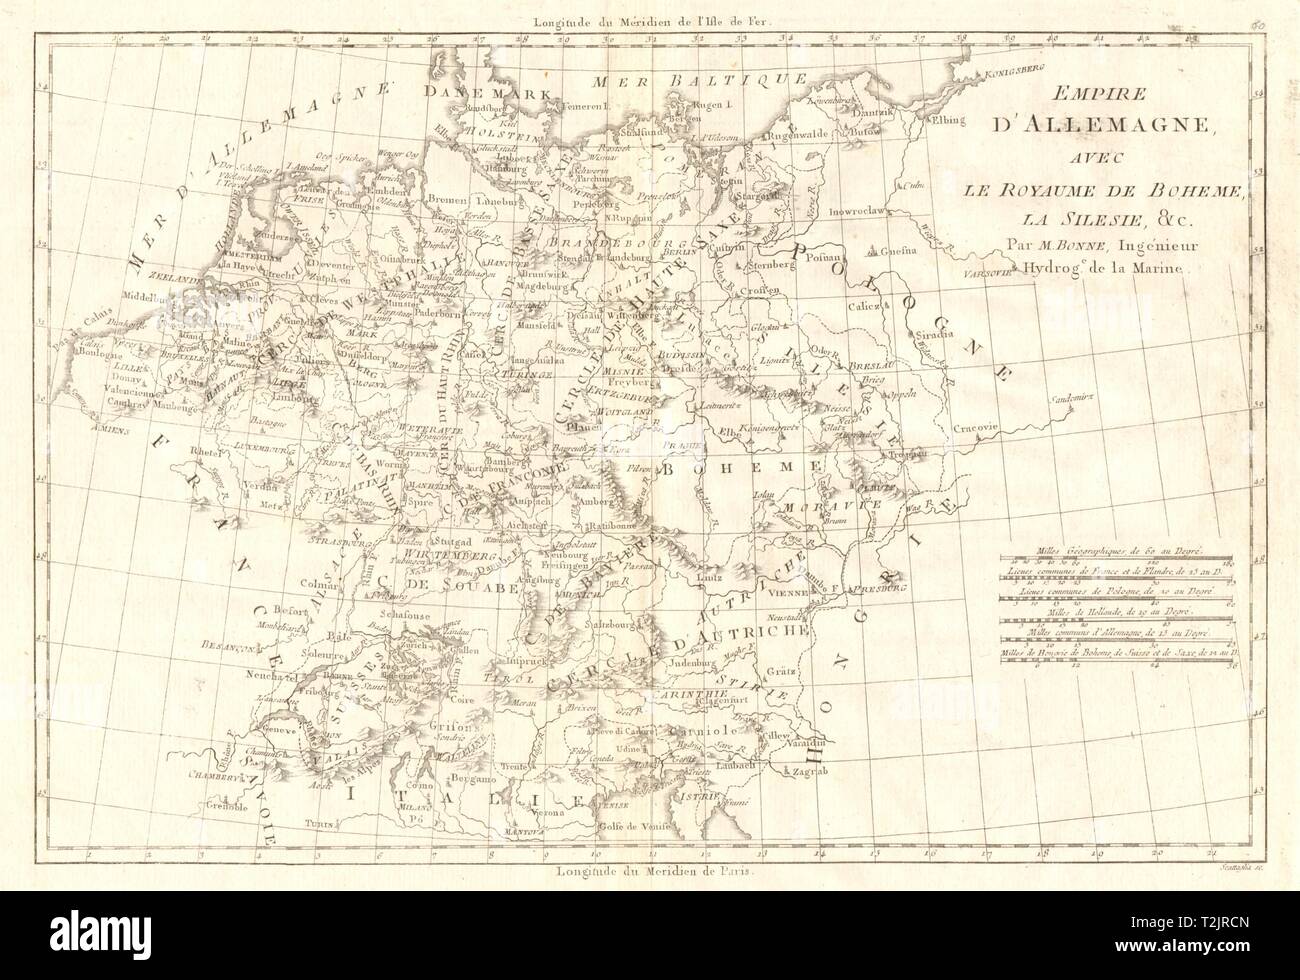 Empire d'Allemagne avec le Royaume de Boheme, la Silesie. Germany BONNE 1789 map Stock Photo